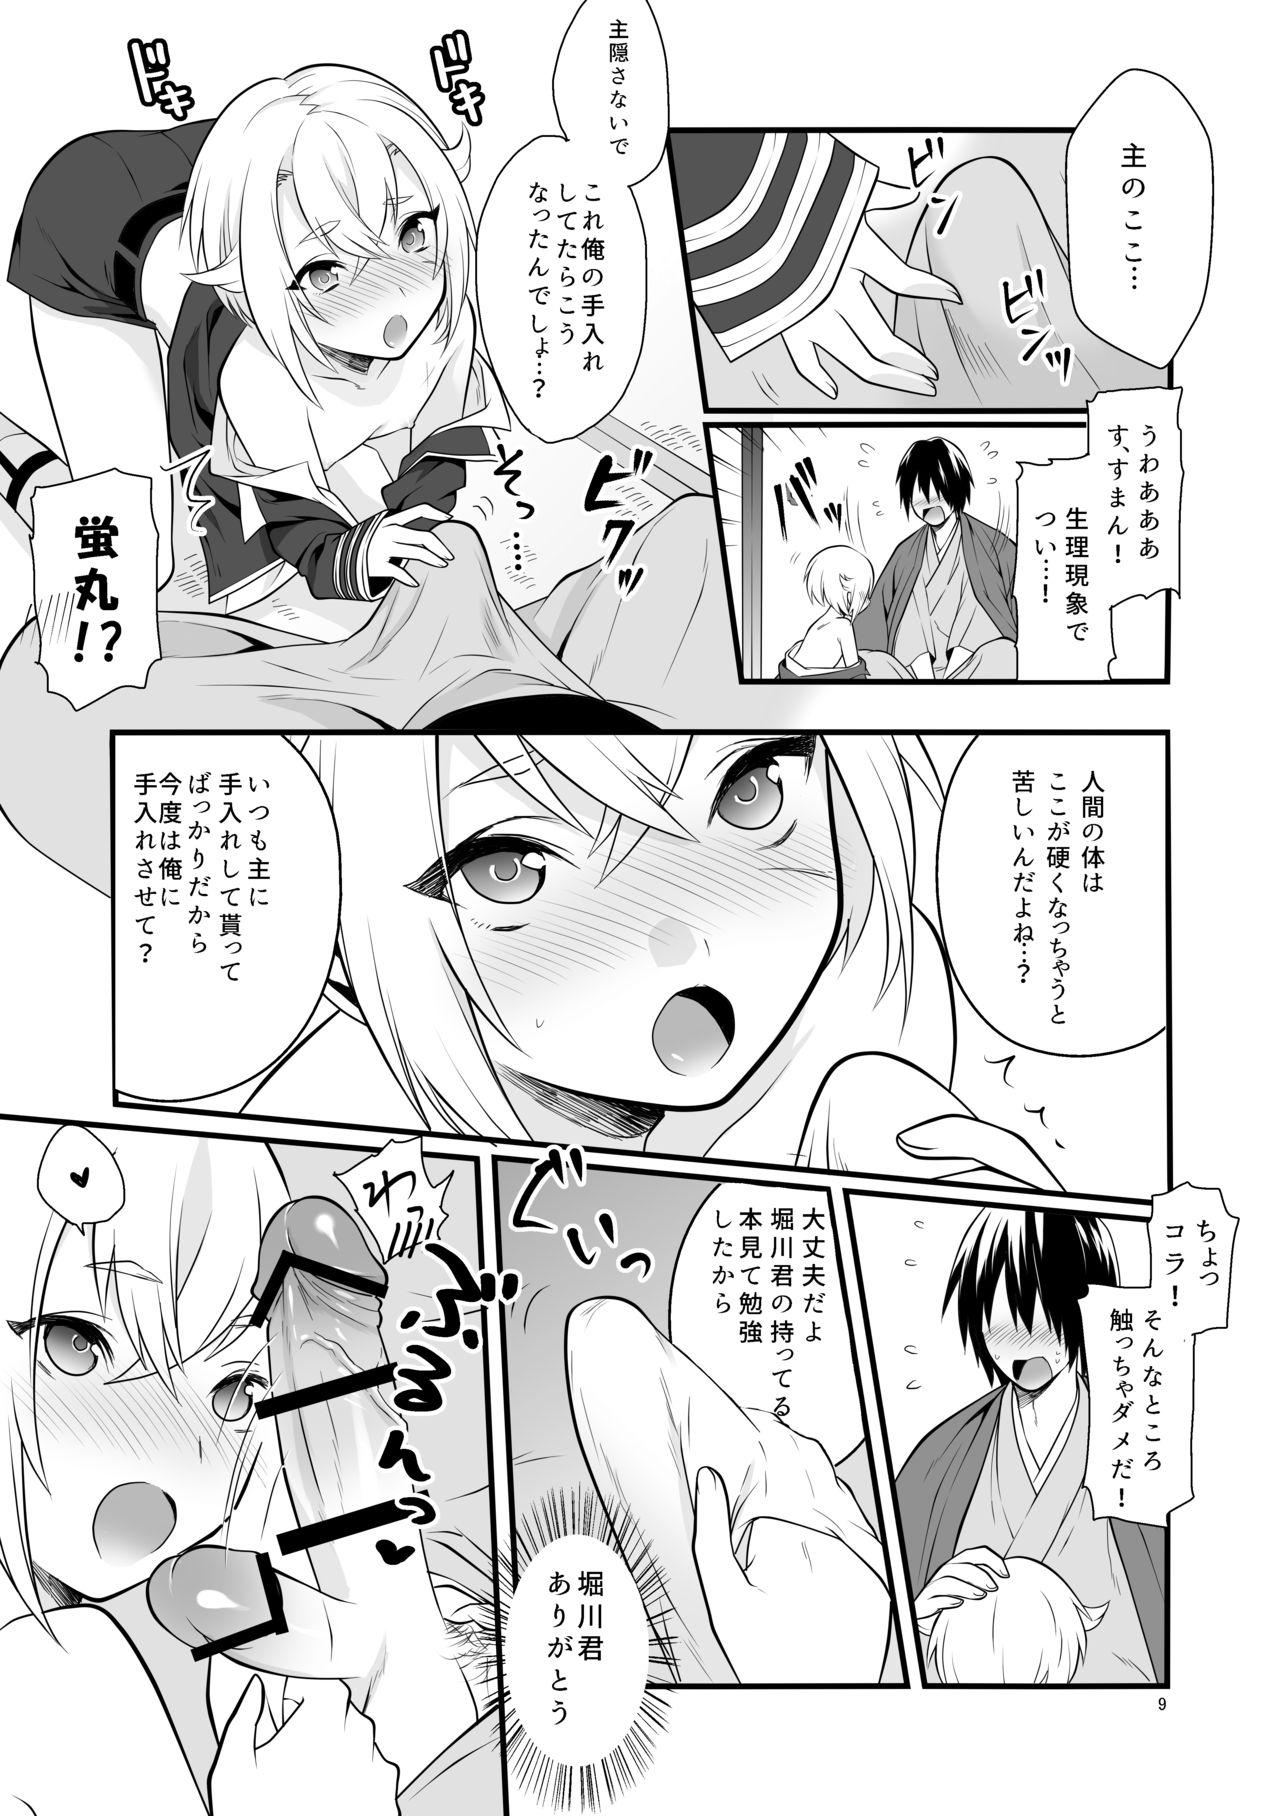 Art Hajimete no Hotarumaru - Touken ranbu Stroking - Page 10